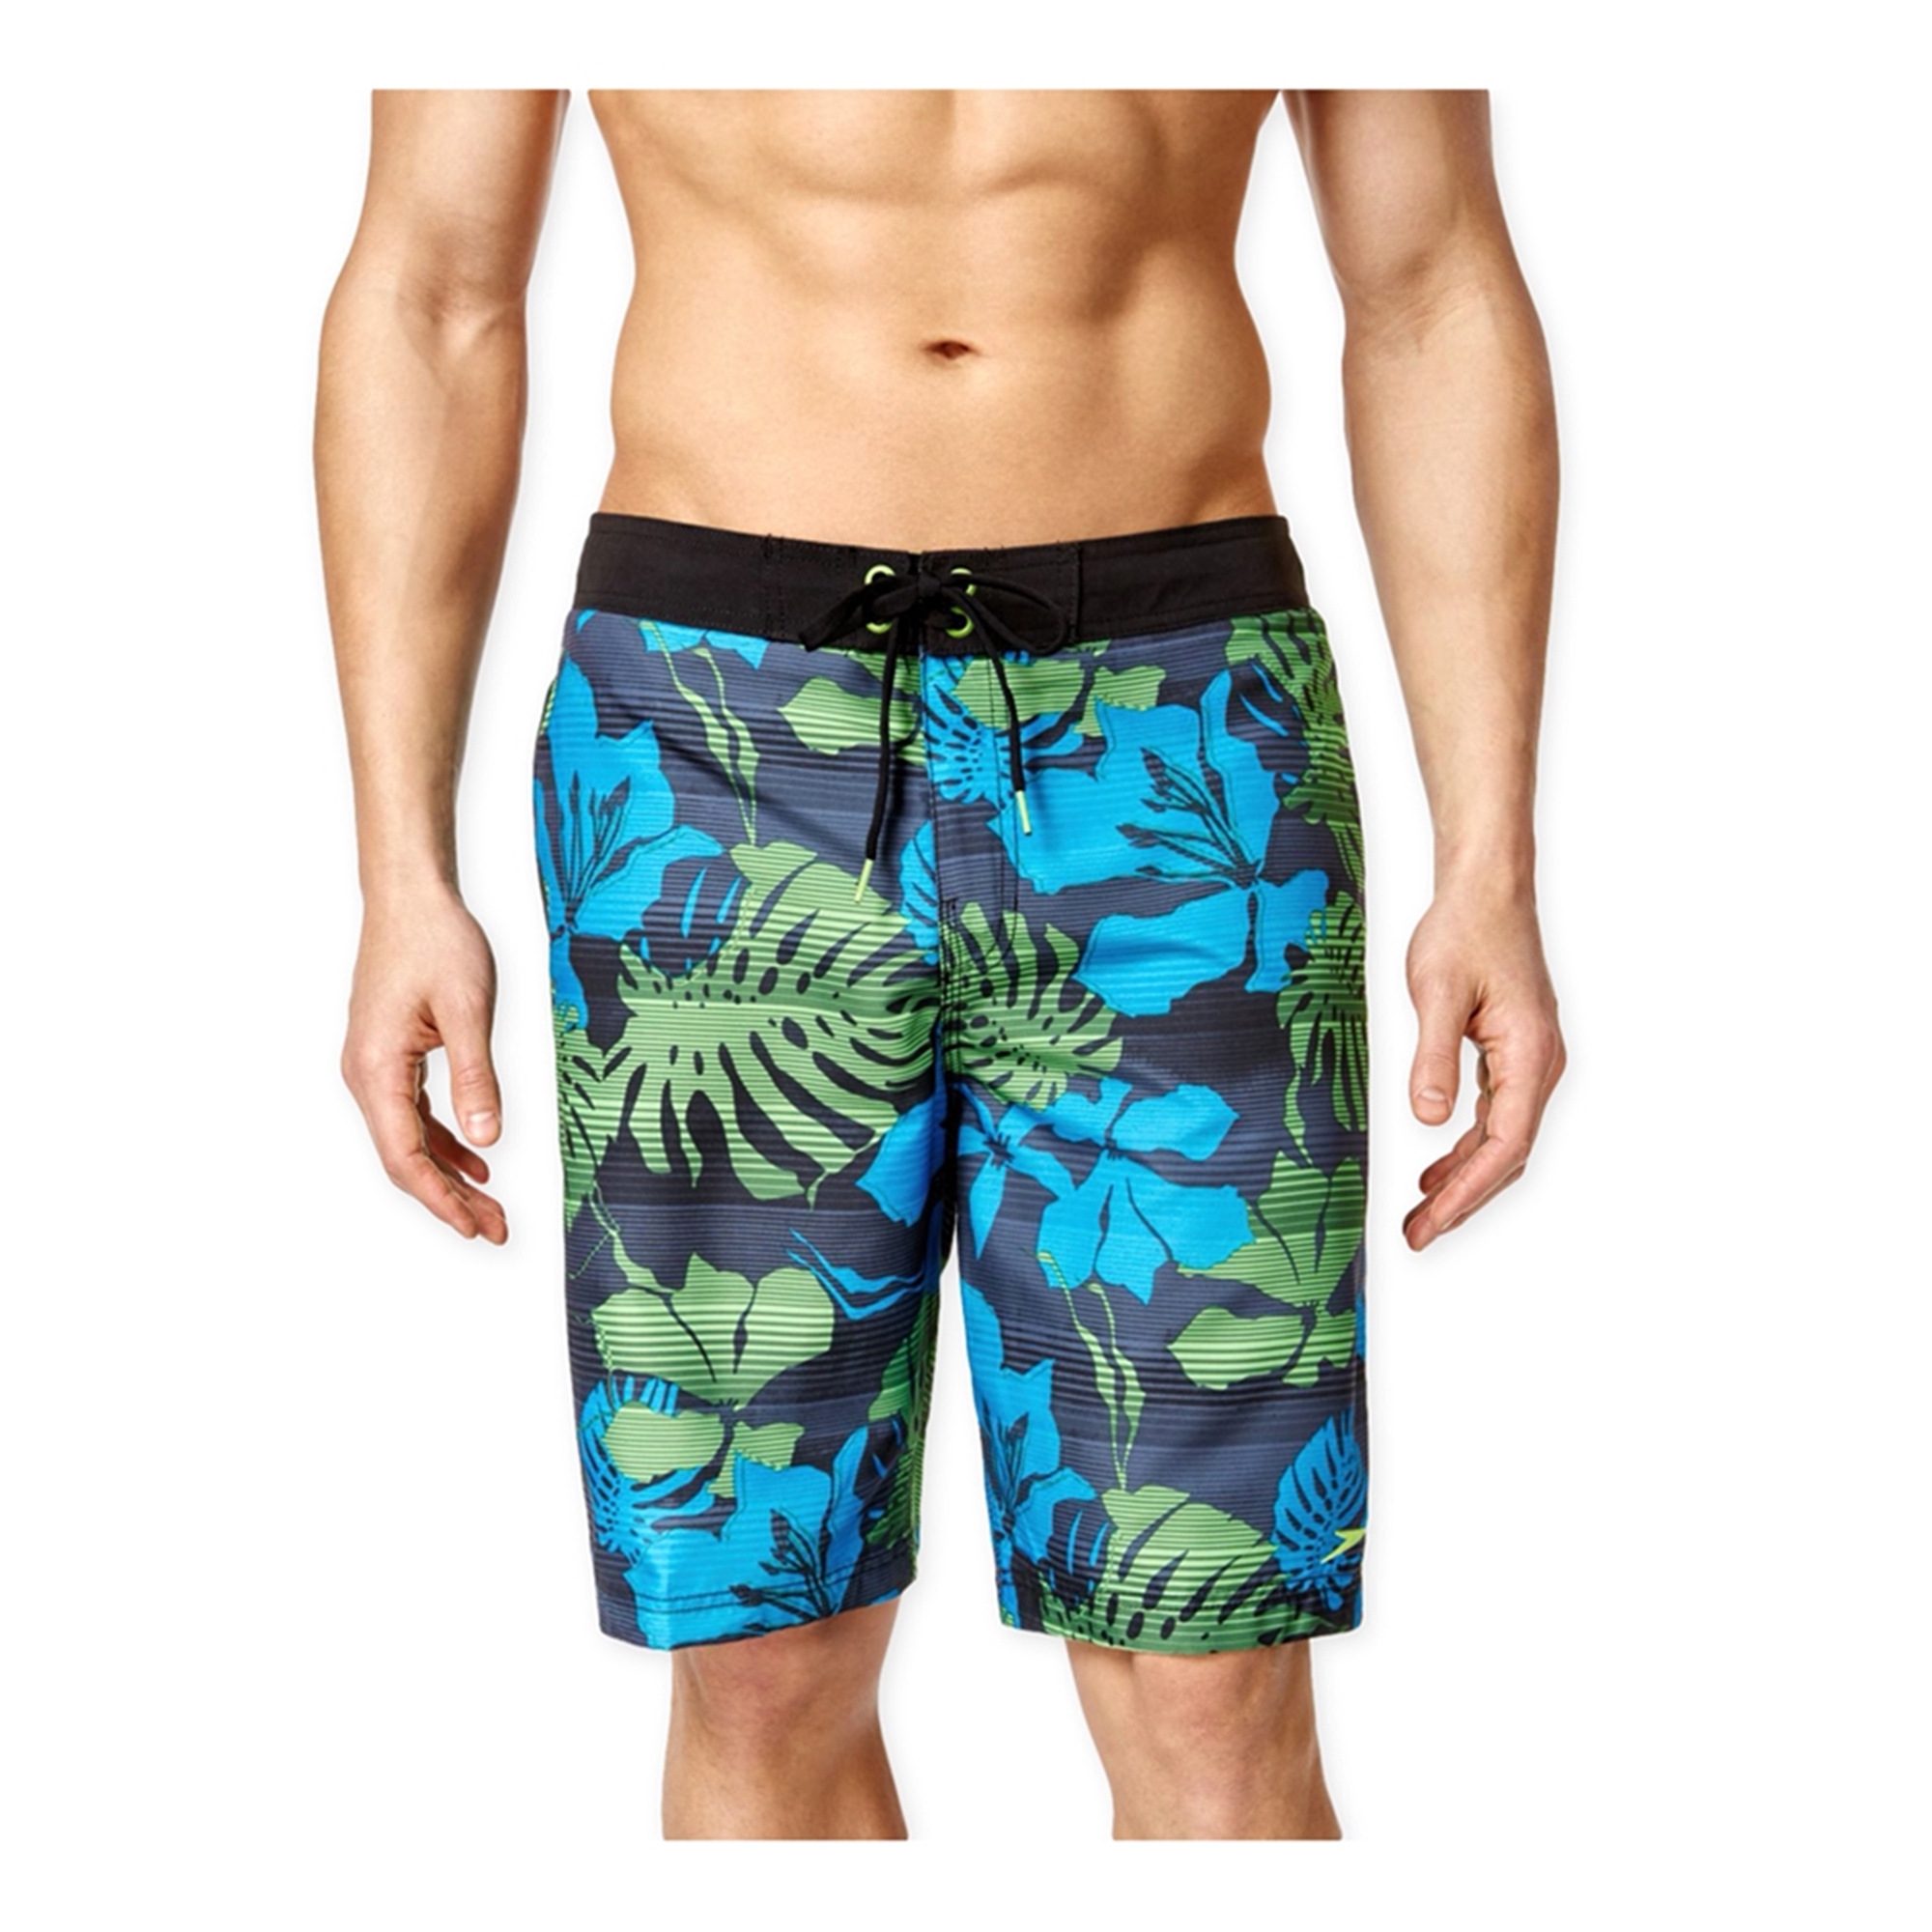 Speedo Mens Tropical Print Swim Bottom Trunks | Mens Apparel | Free ...